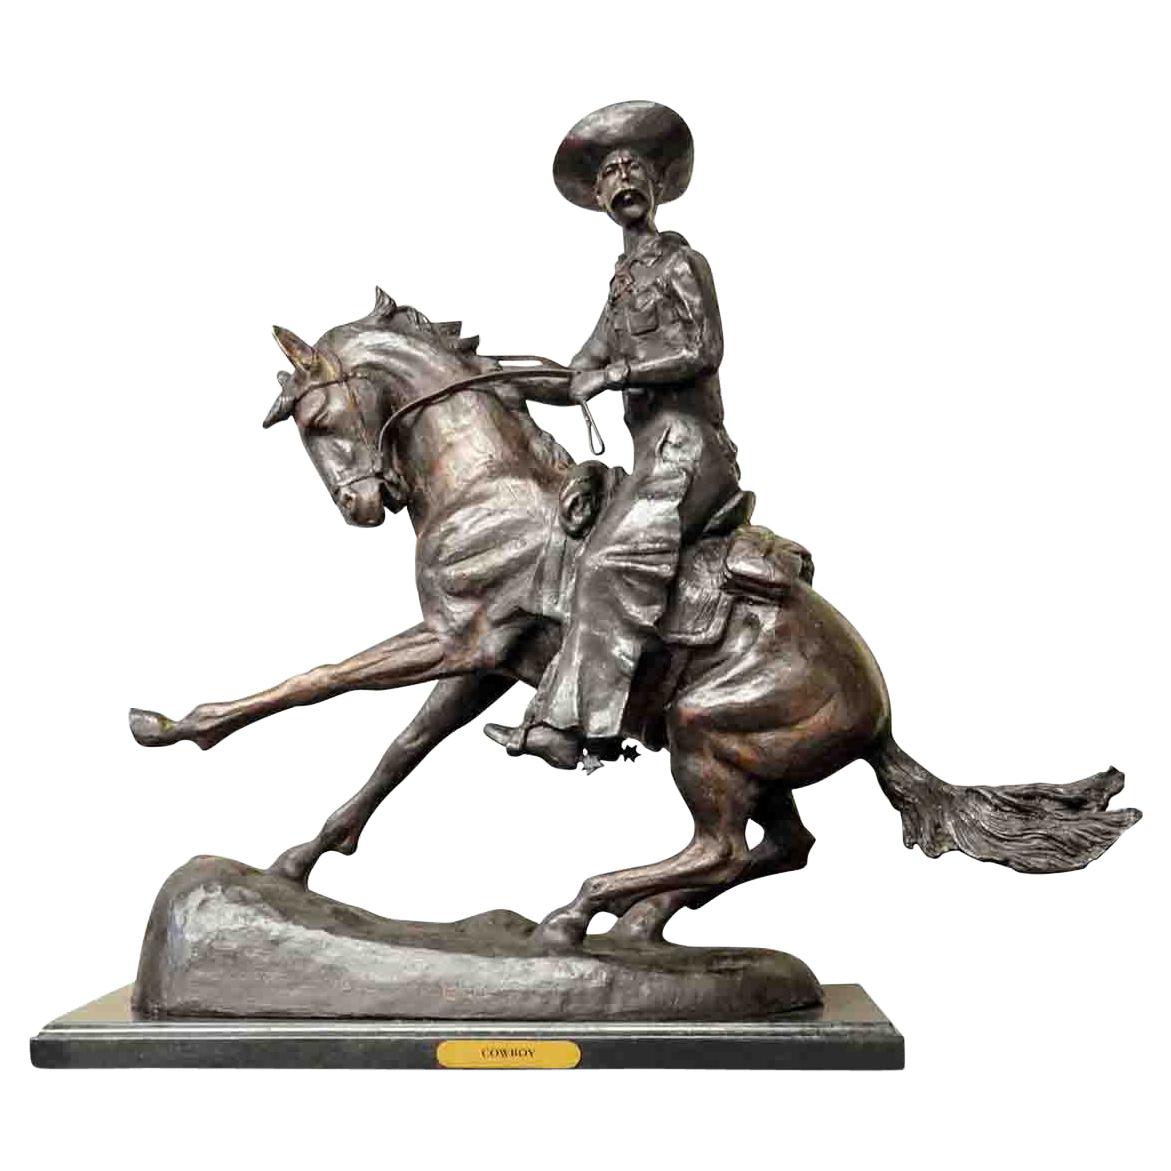 Vaquero, escultura de bronce fundido sobre base de mármol, según Frederic Remington